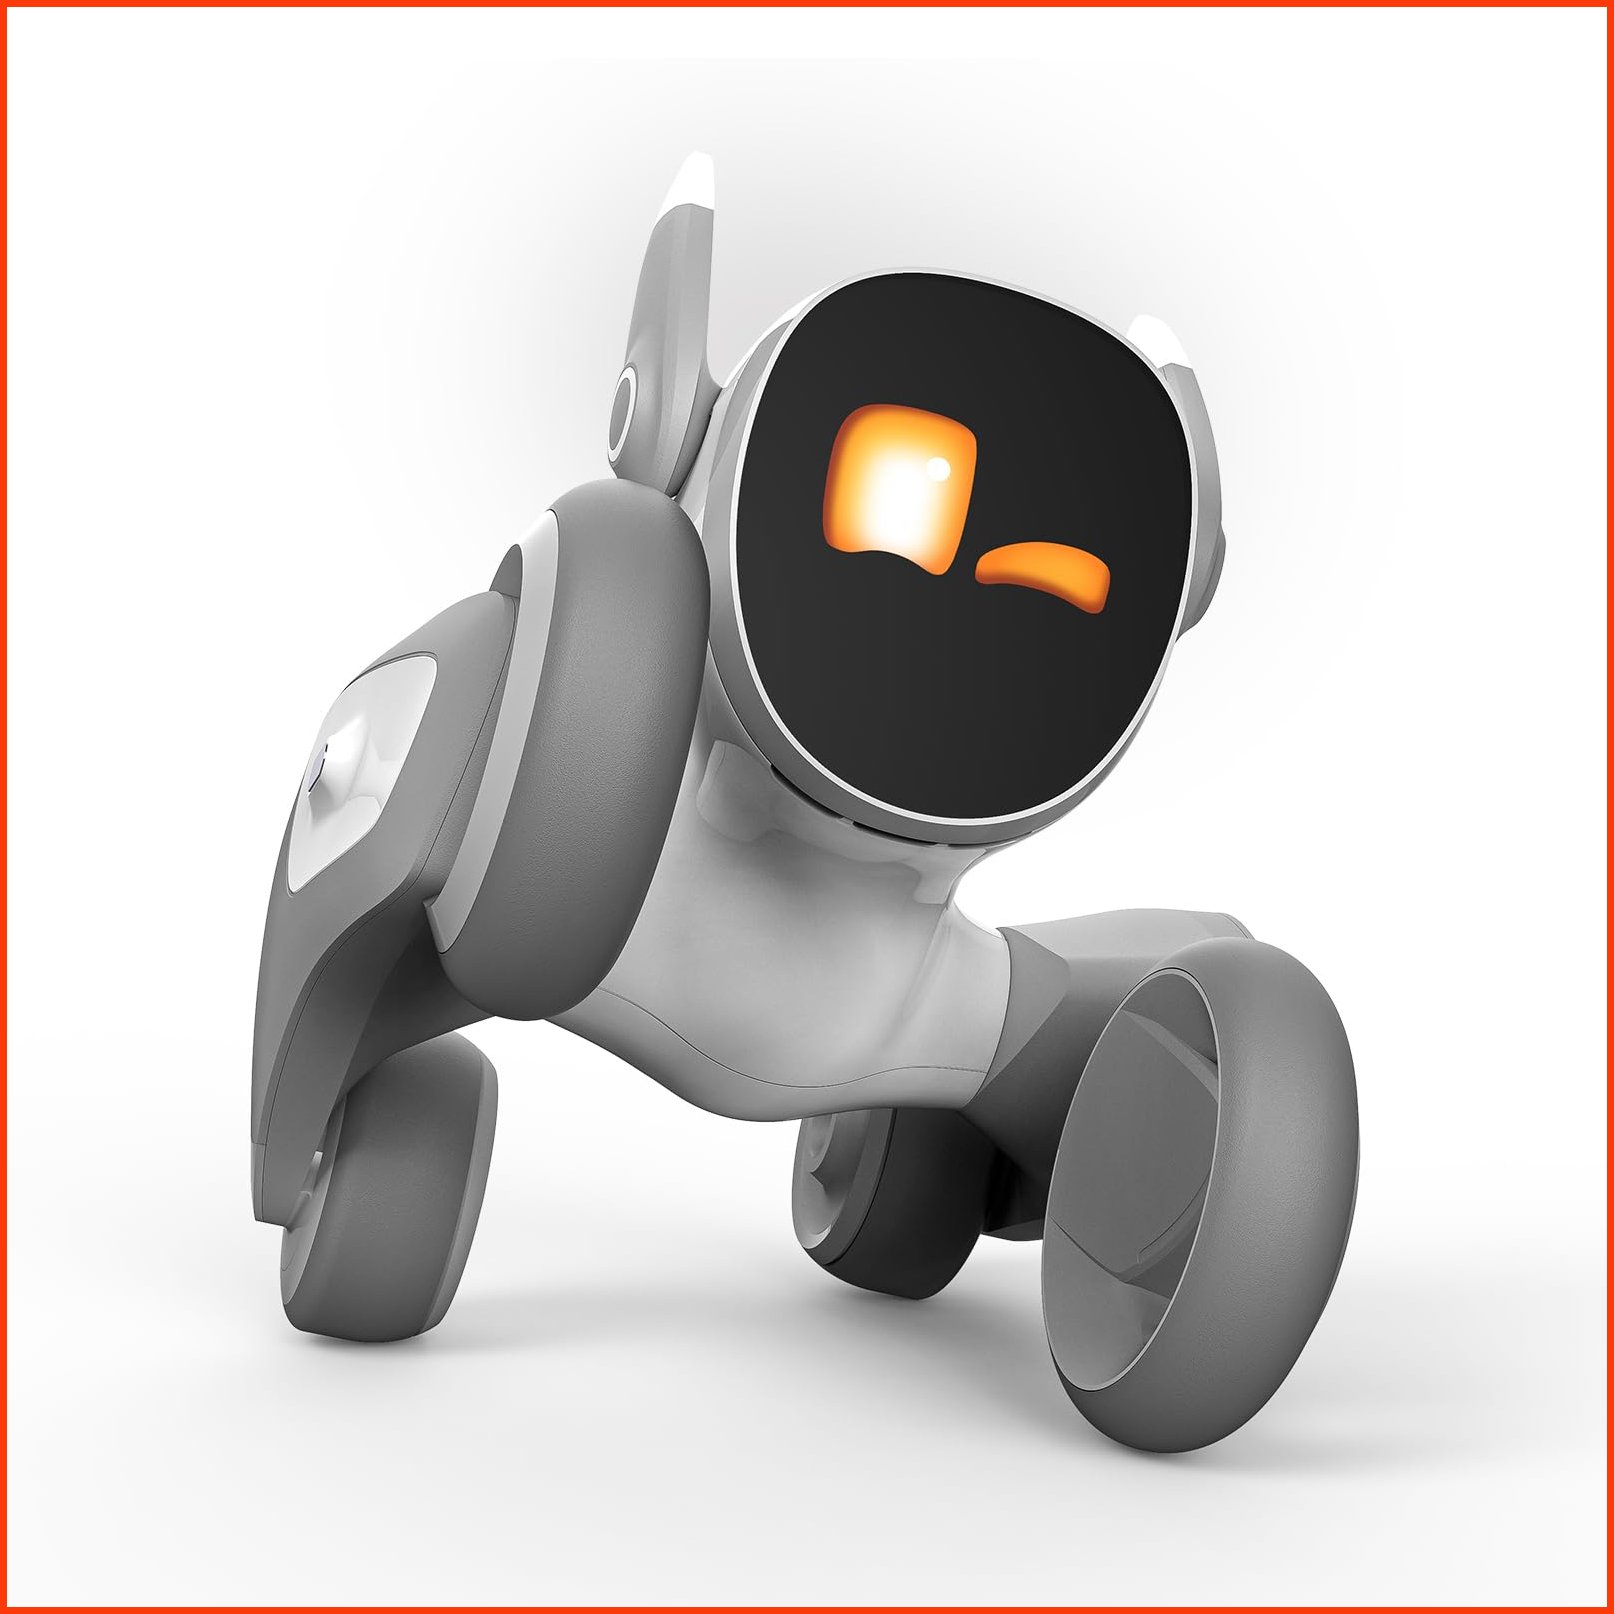 並行輸入品Loona The Most Advanced Smart Robot Pet Dog - Chat GPT Enabled with Voice Command Gesture Recognition - Top